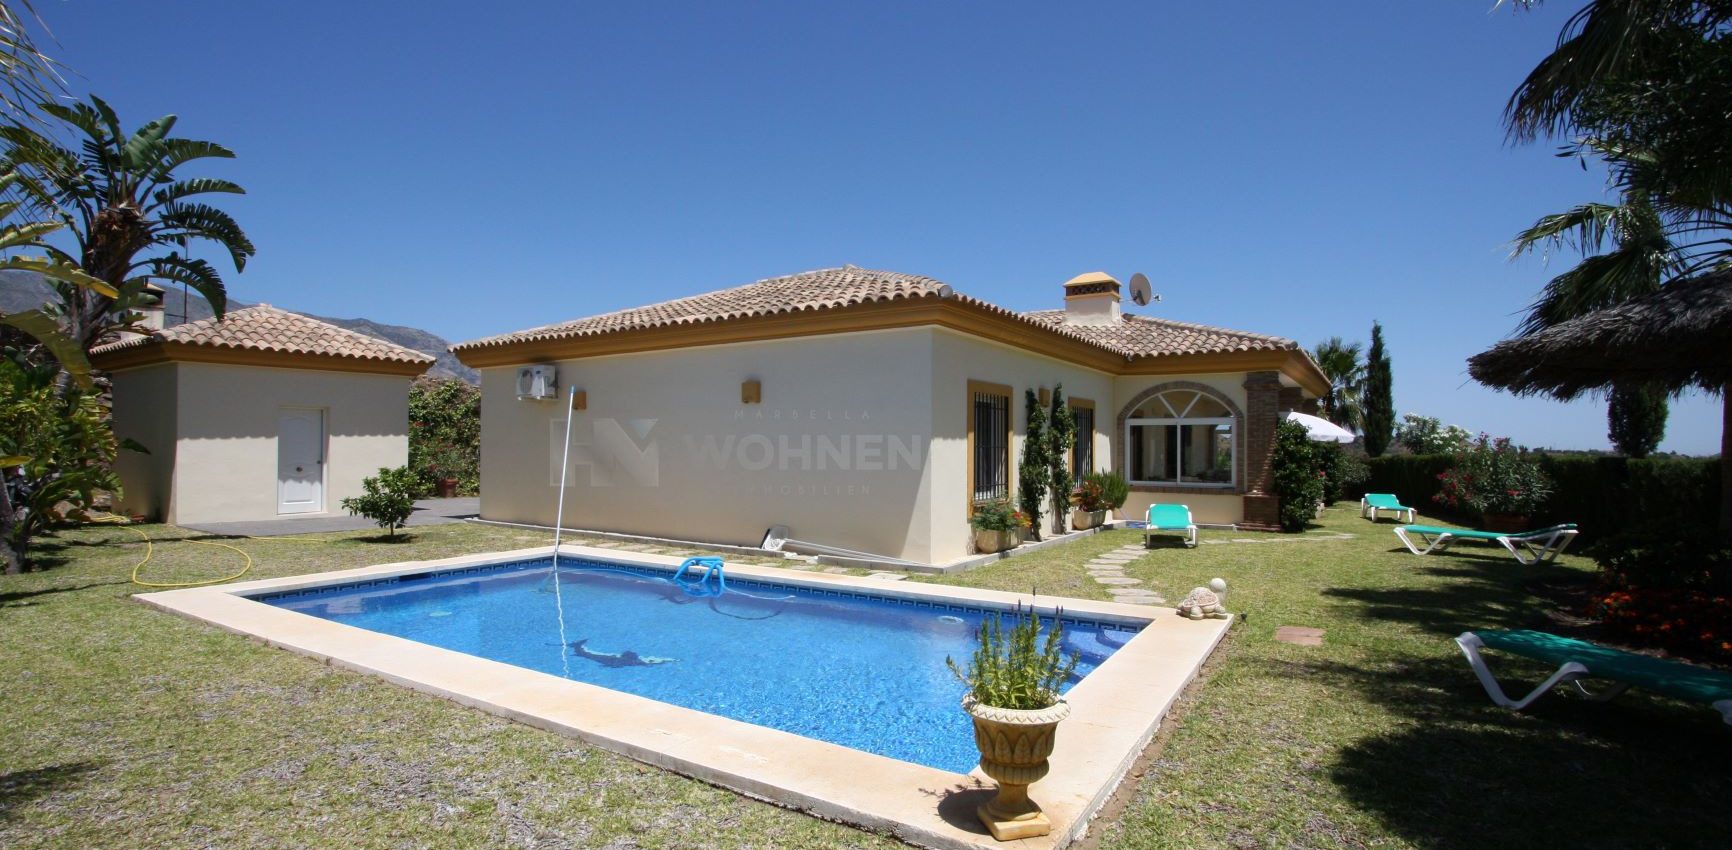 Andalusische Villa auf einem schönen Grundstück mit herrlichem Berg- und Landschaftsblick